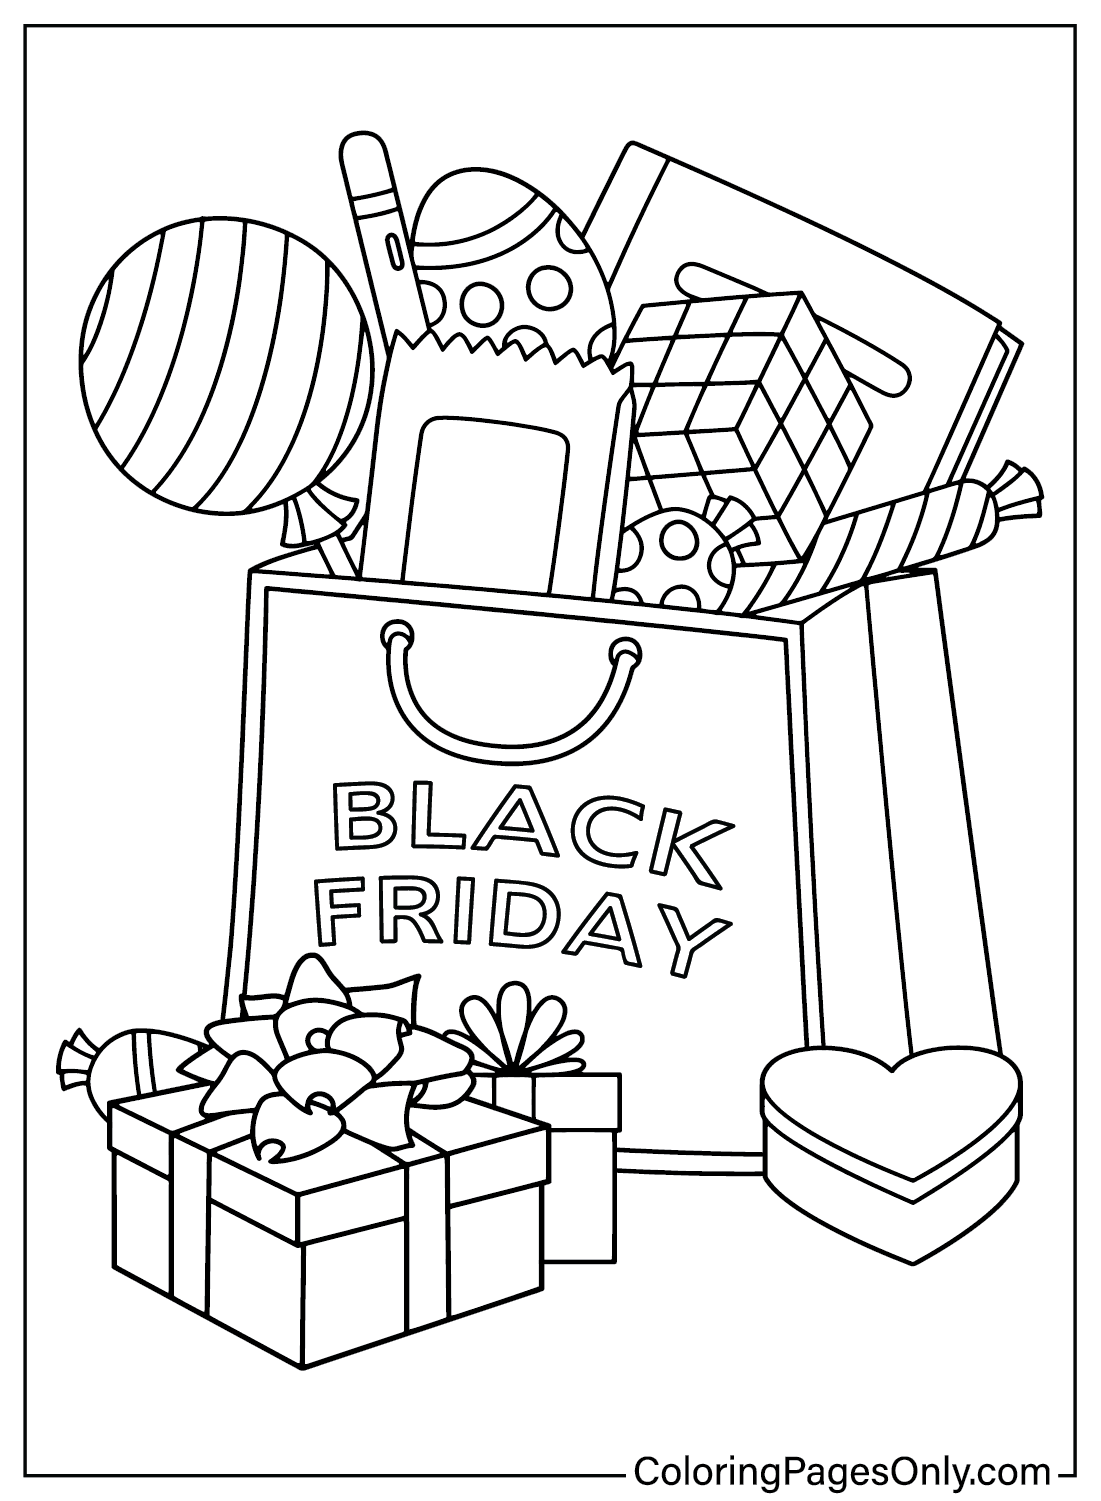 Black Friday kleurplaat afdrukken van Black Friday